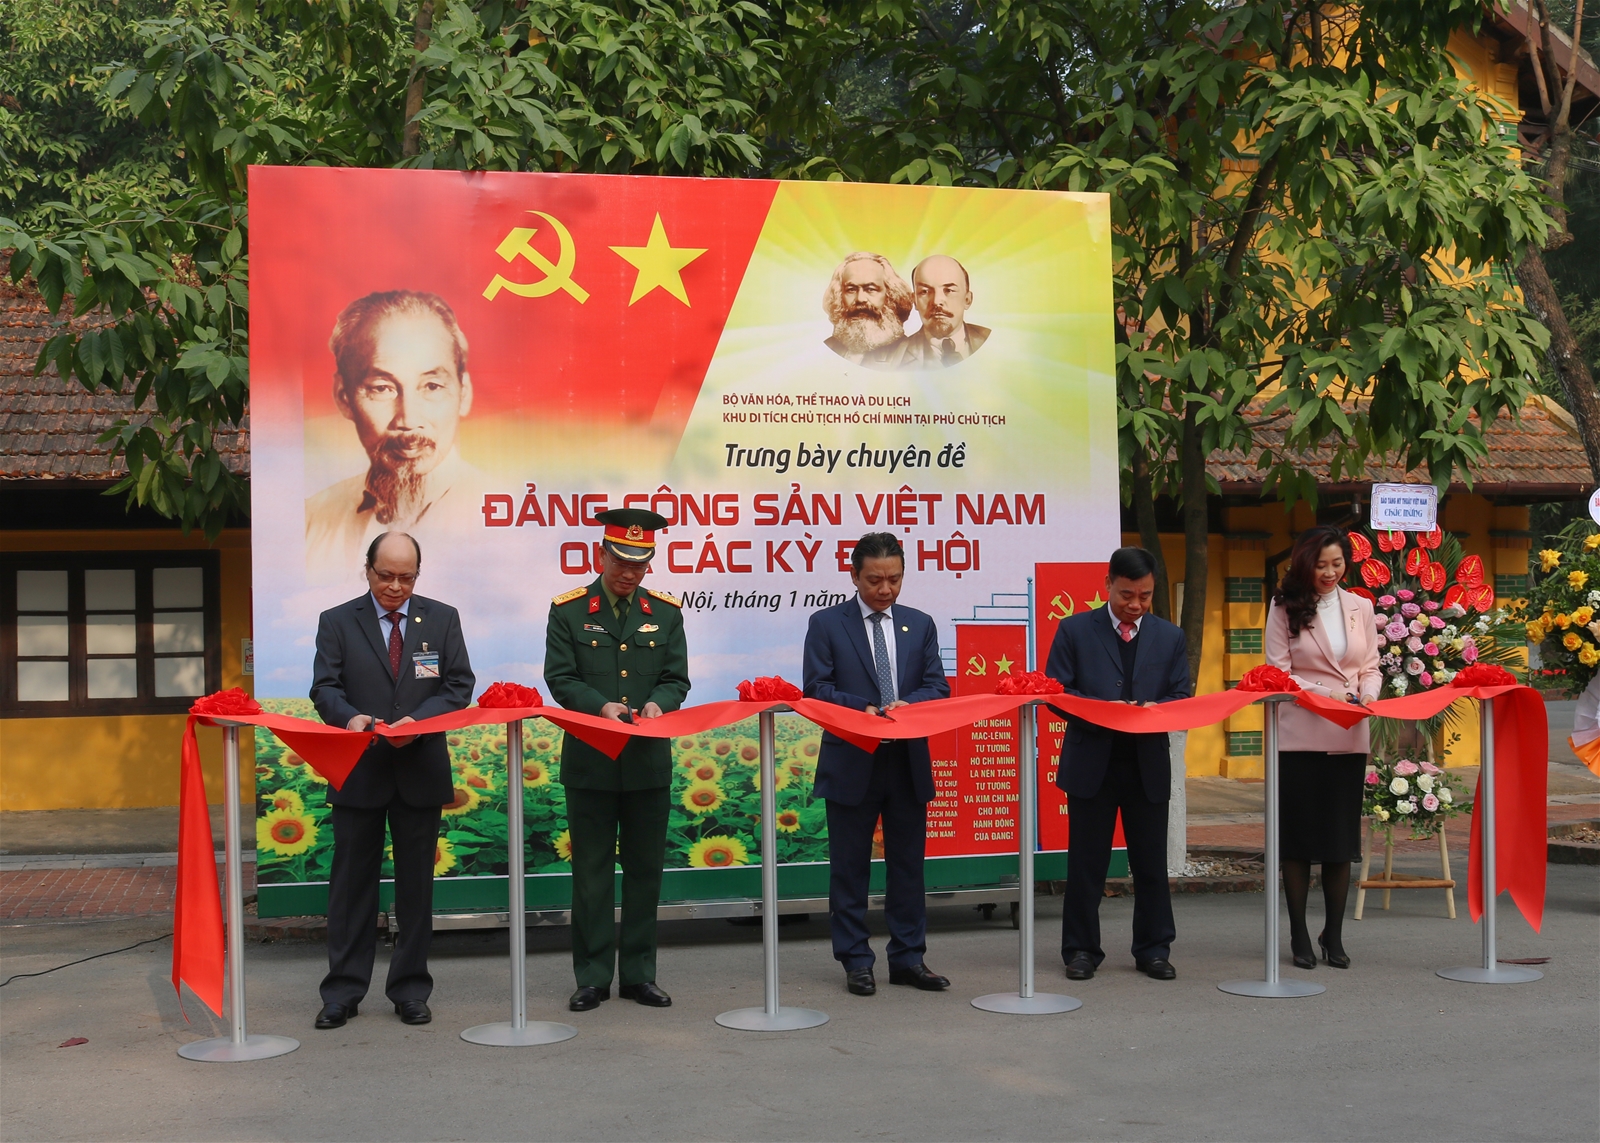 Khai mạc trưng bày chuyên đề: “Đảng Cộng sản Việt Nam qua các kỳ Đại hội” (ngày 22/01/2021)